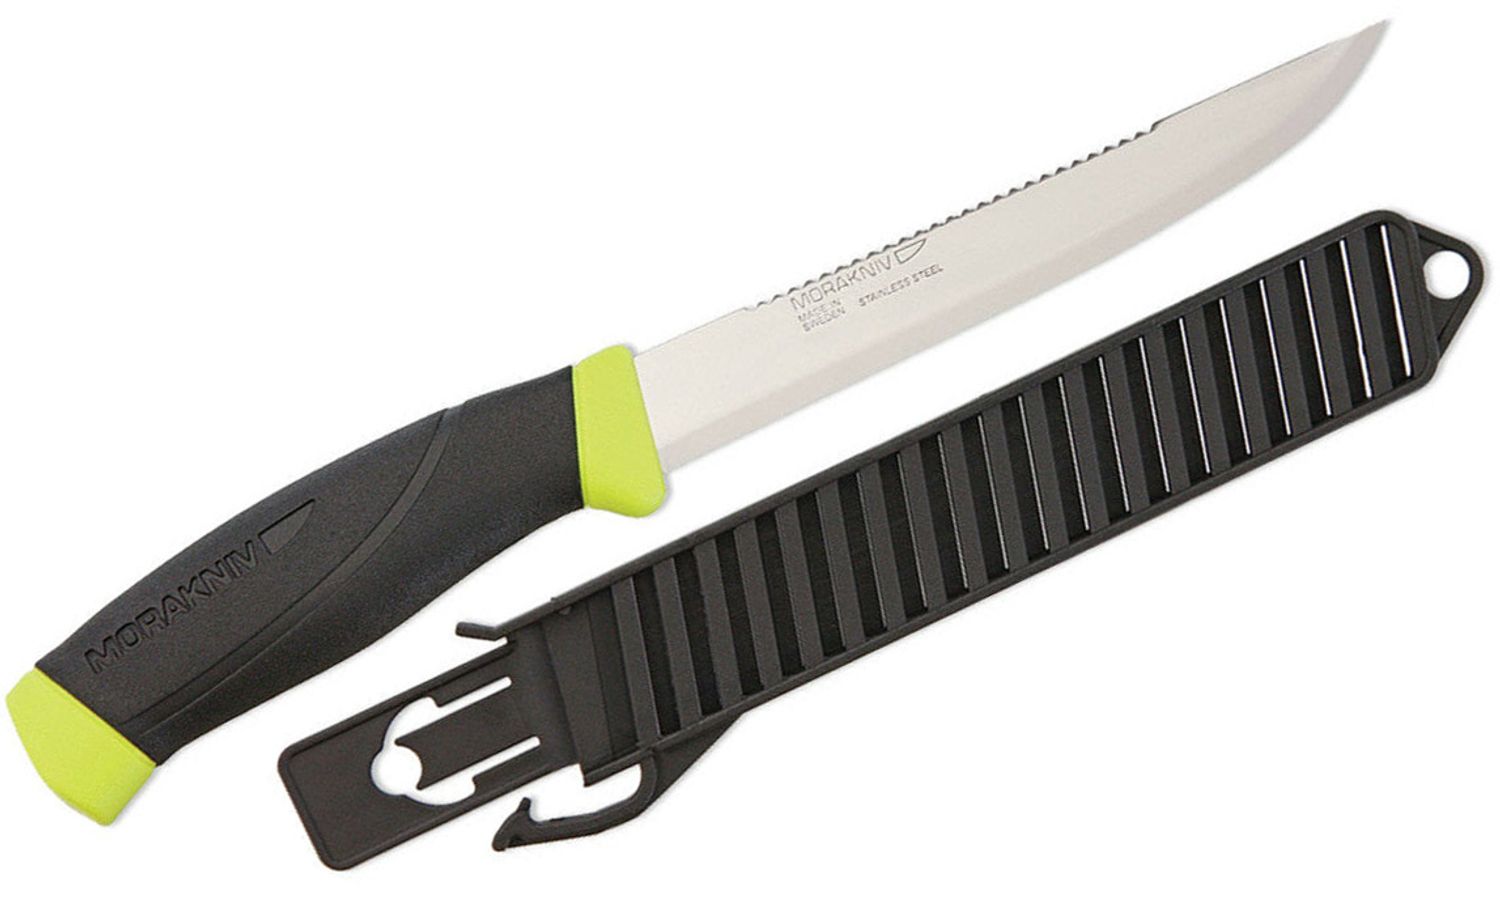 Morakniv Mora of Sweden 150 Fishing Comfort Scaler Knife 5.9